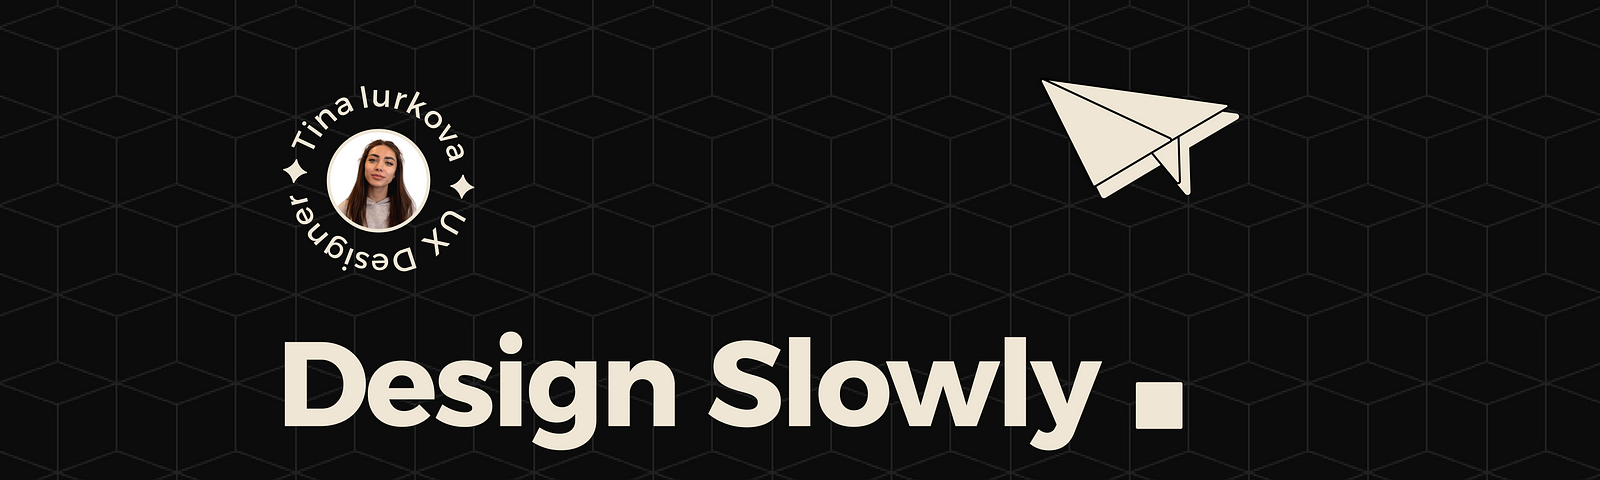 Cover for Design Slowly newsletter.